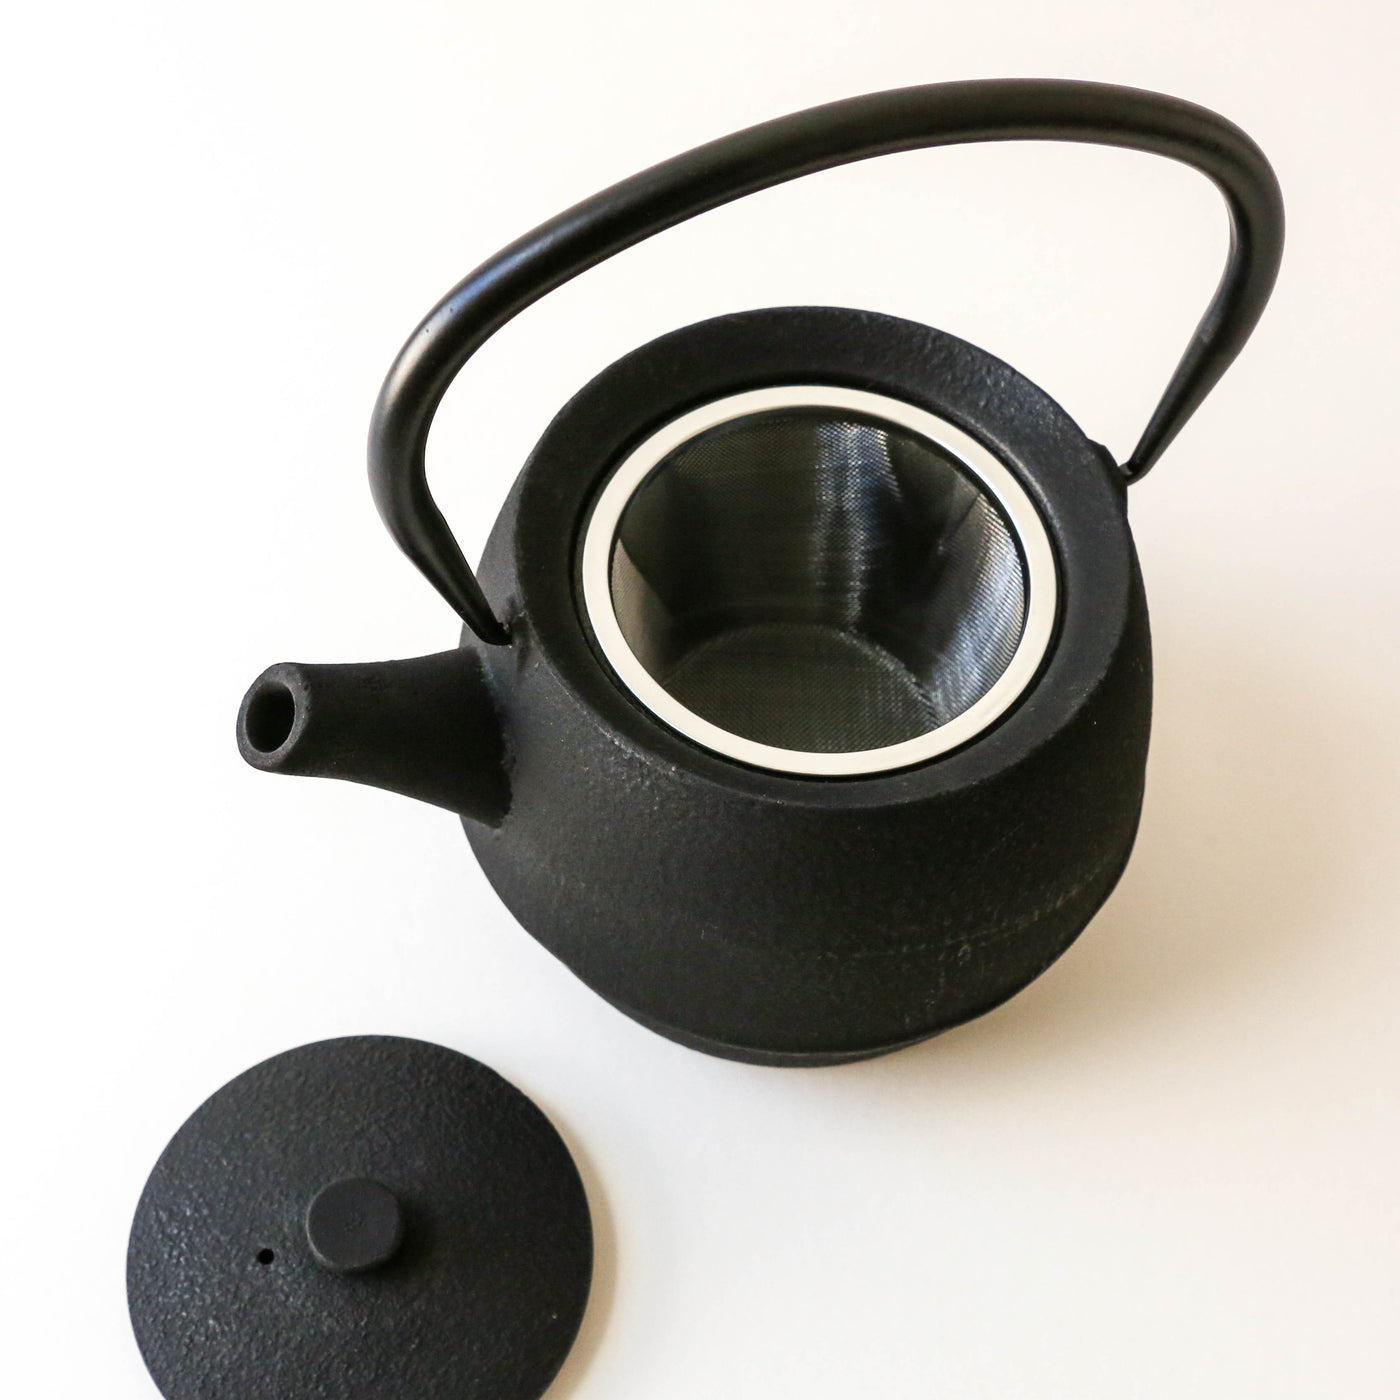 Black Cast Teapot